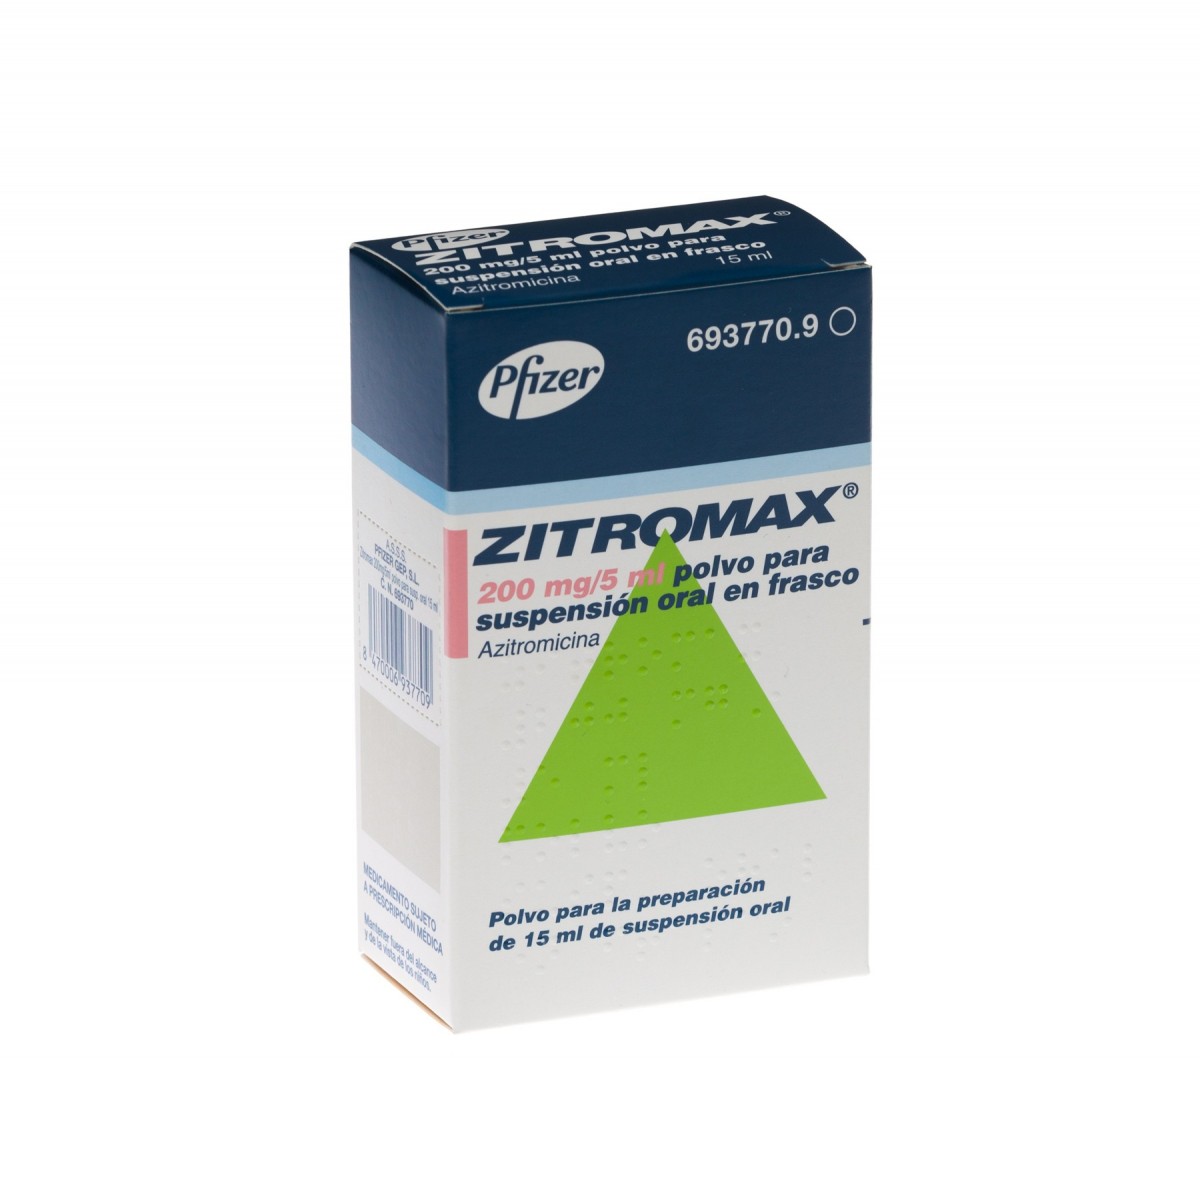 ZITROMAX 200 mg/5 ml POLVO PARA SUSPENSION ORAL EN FRASCO, 1 frasco de 37,5 ml fotografía del envase.